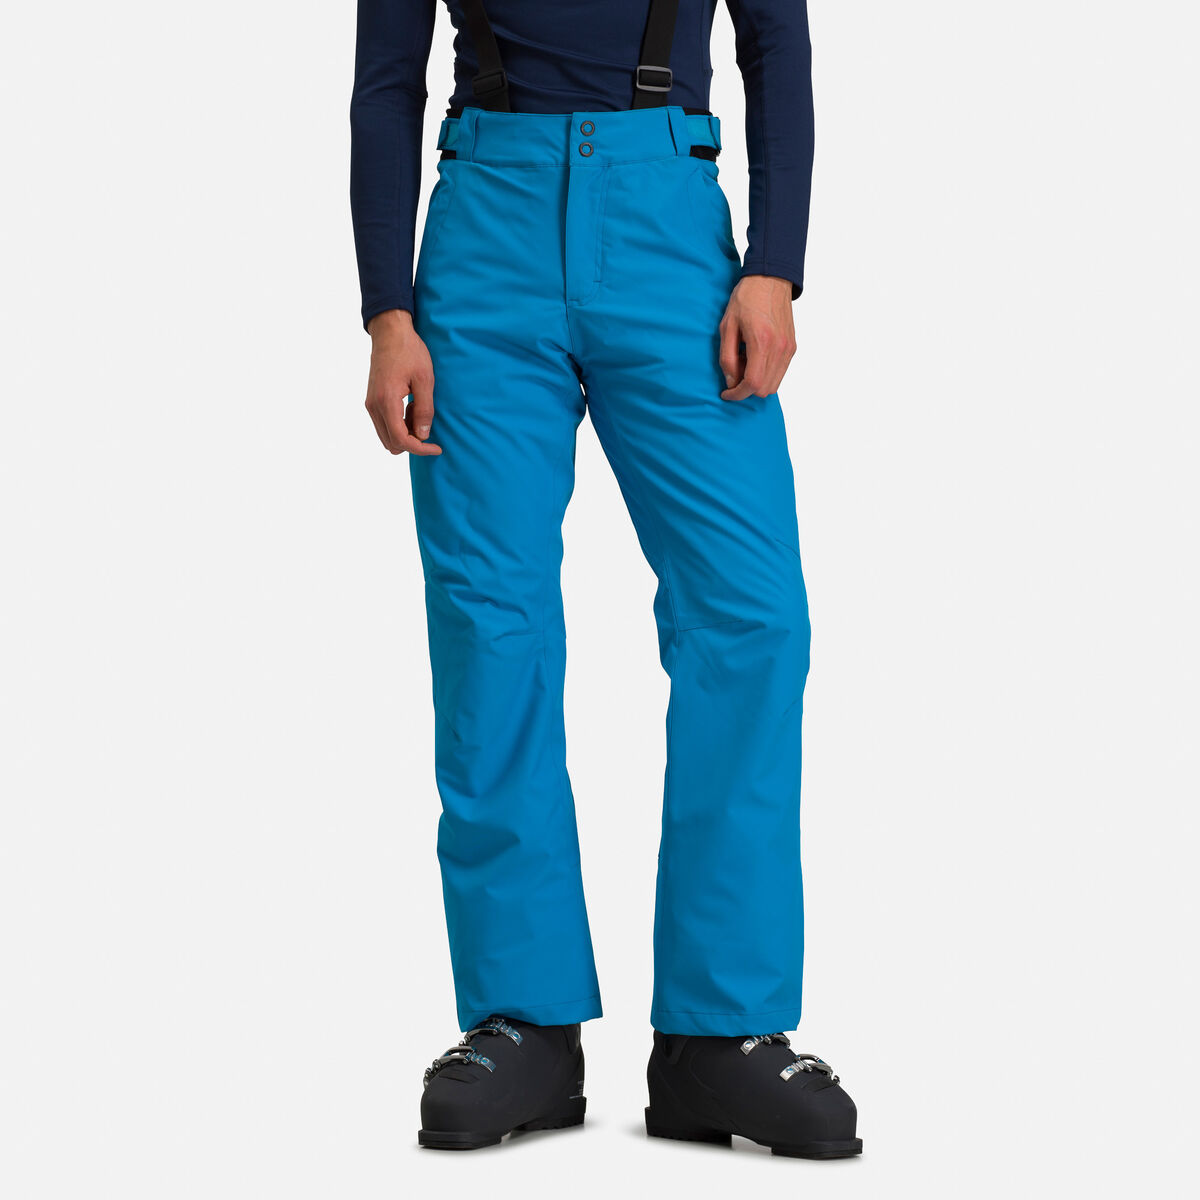 Rossignol Classique pantalón de esquí para hombre azul oscuro 